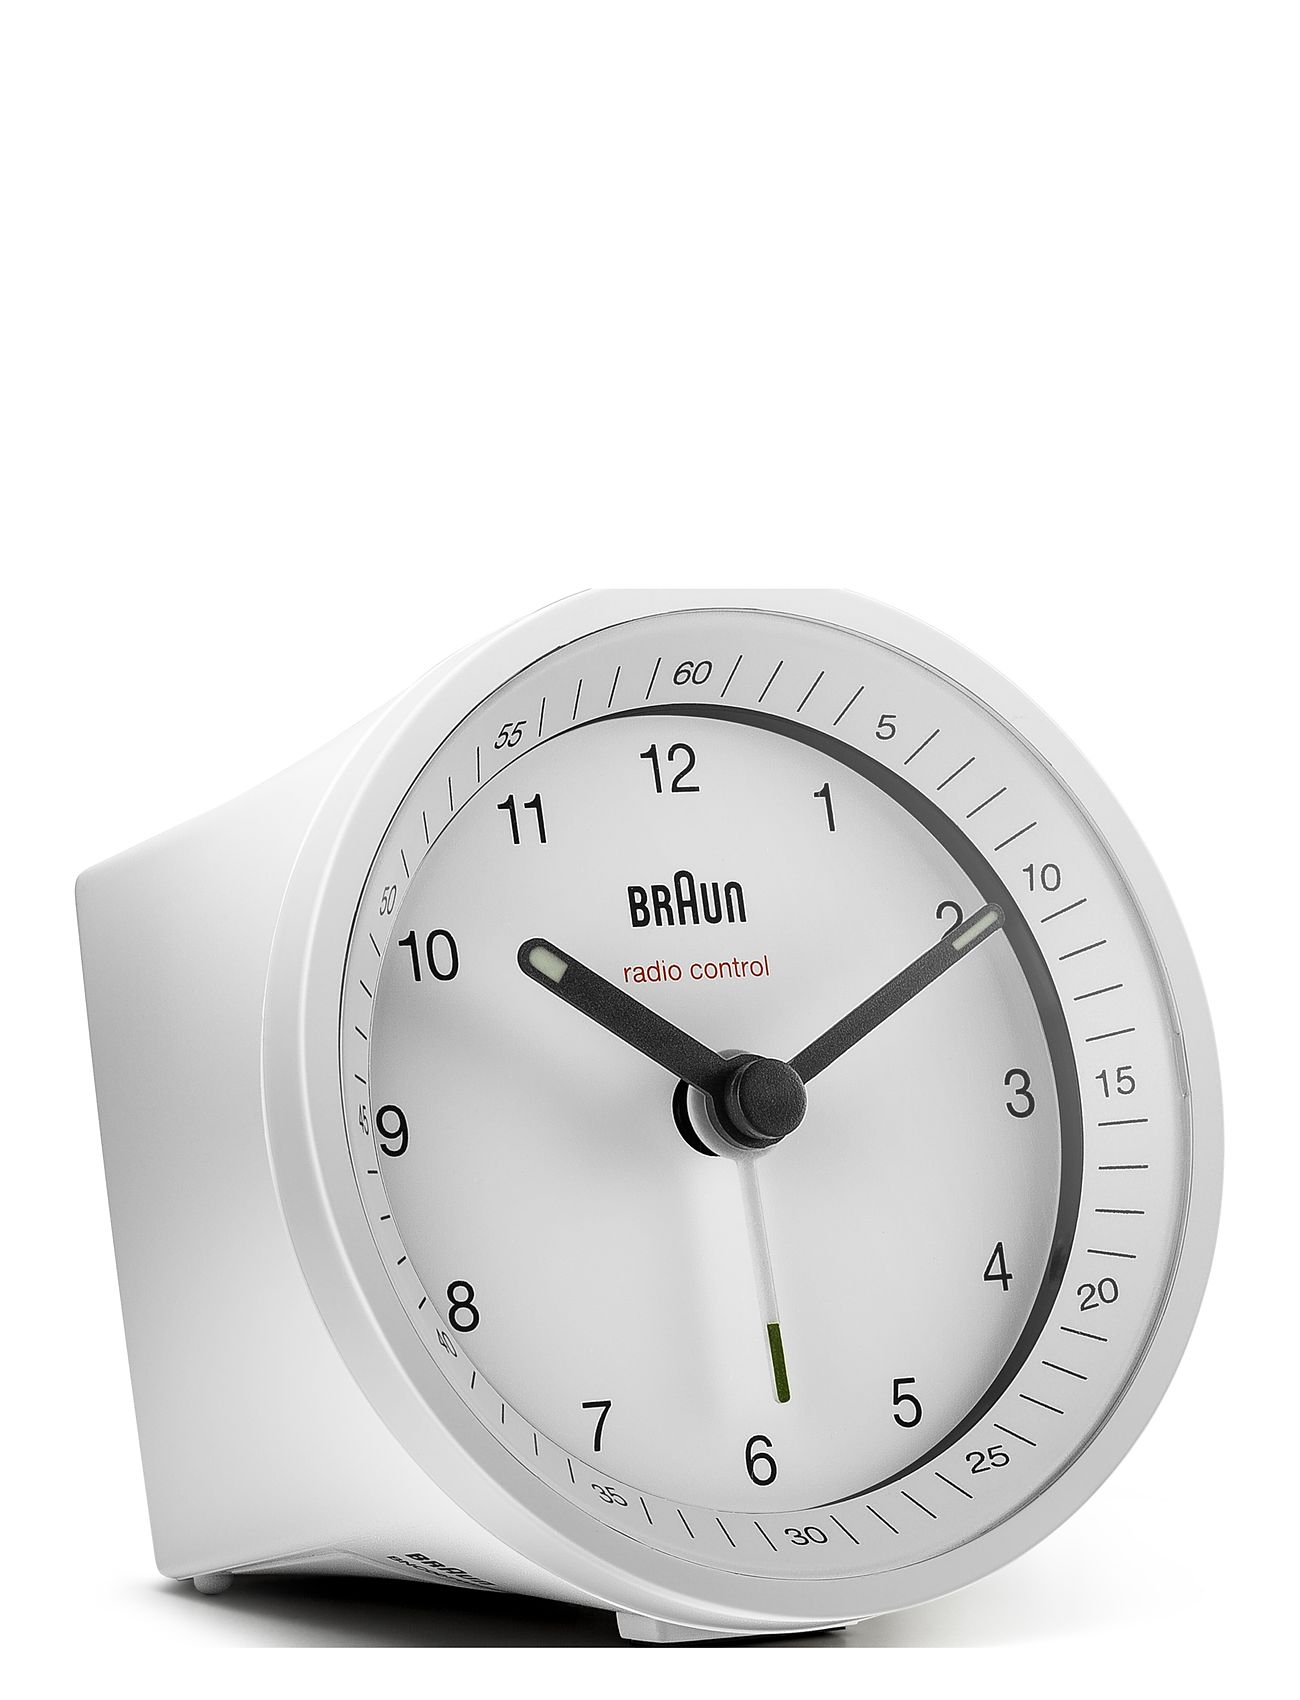 Braun Vækkeur Home Decoration Watches Alarm Clocks White Braun